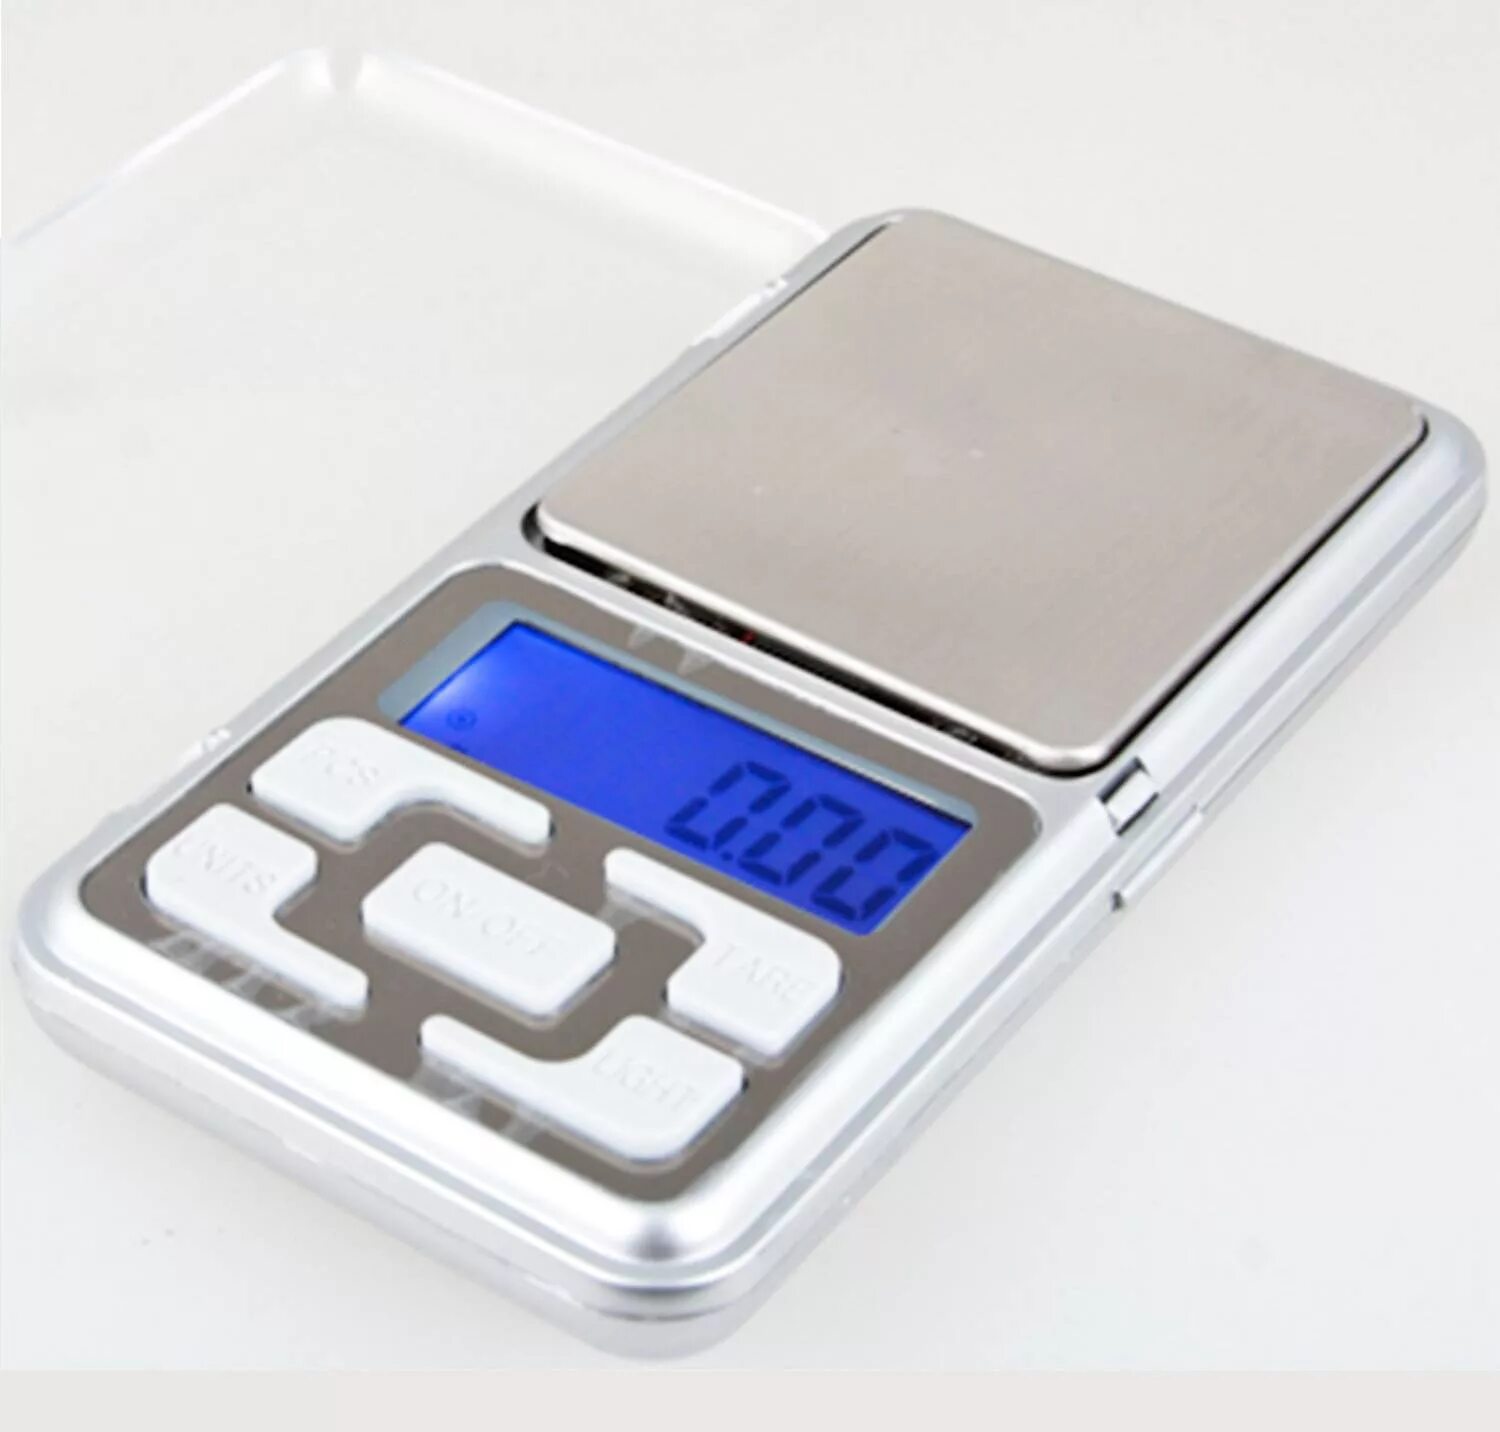 Весы портативные электронные. 'Весы электронные MH-200 Pocket Scale 200гр/0,01гр. Весы ювелирные "MH-500" (до 500 гр.). Весы Pocket Scale MH-100. Pocket Scale MH-500 весы ювелирные электронные карманные 500 г/0,1 г.